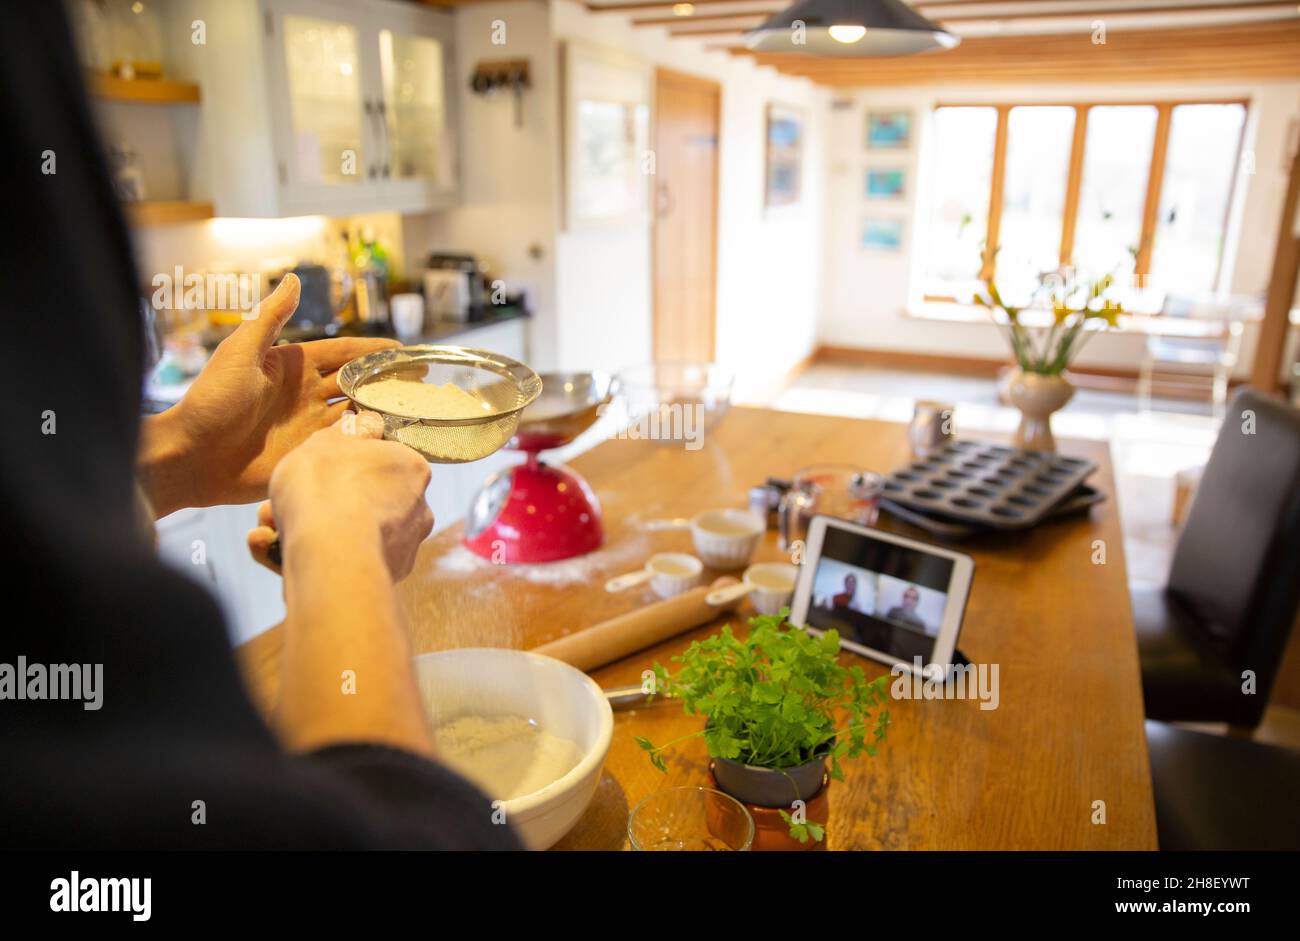 Hombre vídeo charlando y haciendo masa fresca de pizza en la cocina Foto de stock